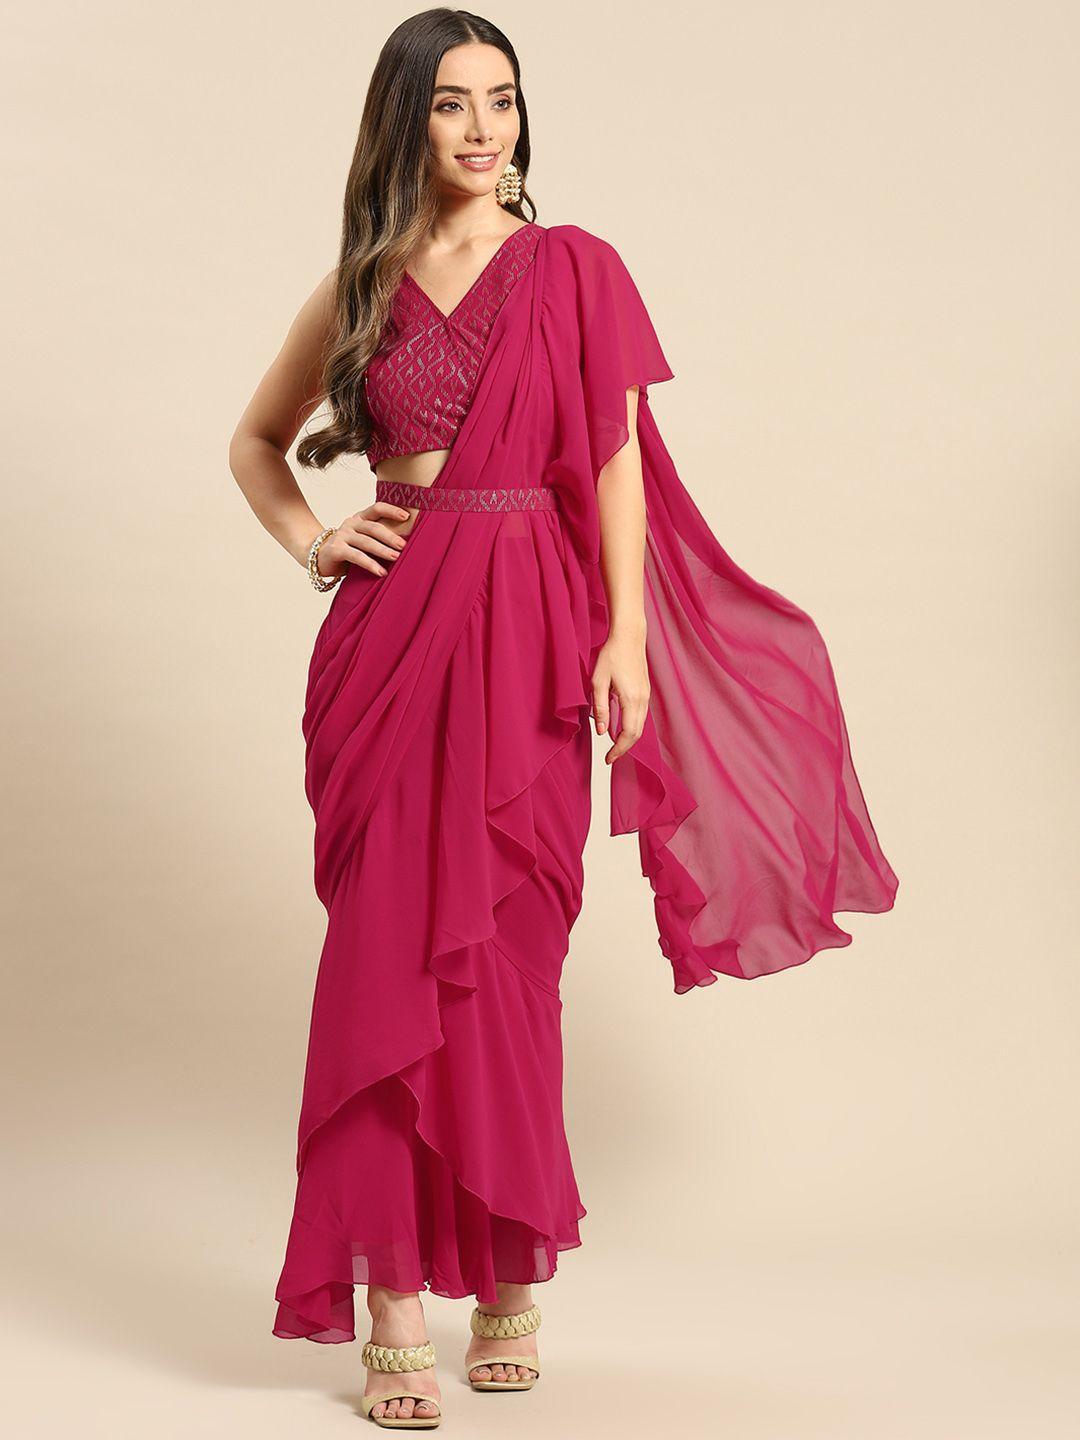 mabish by sonal jain magenta ruffled ready to wear saree